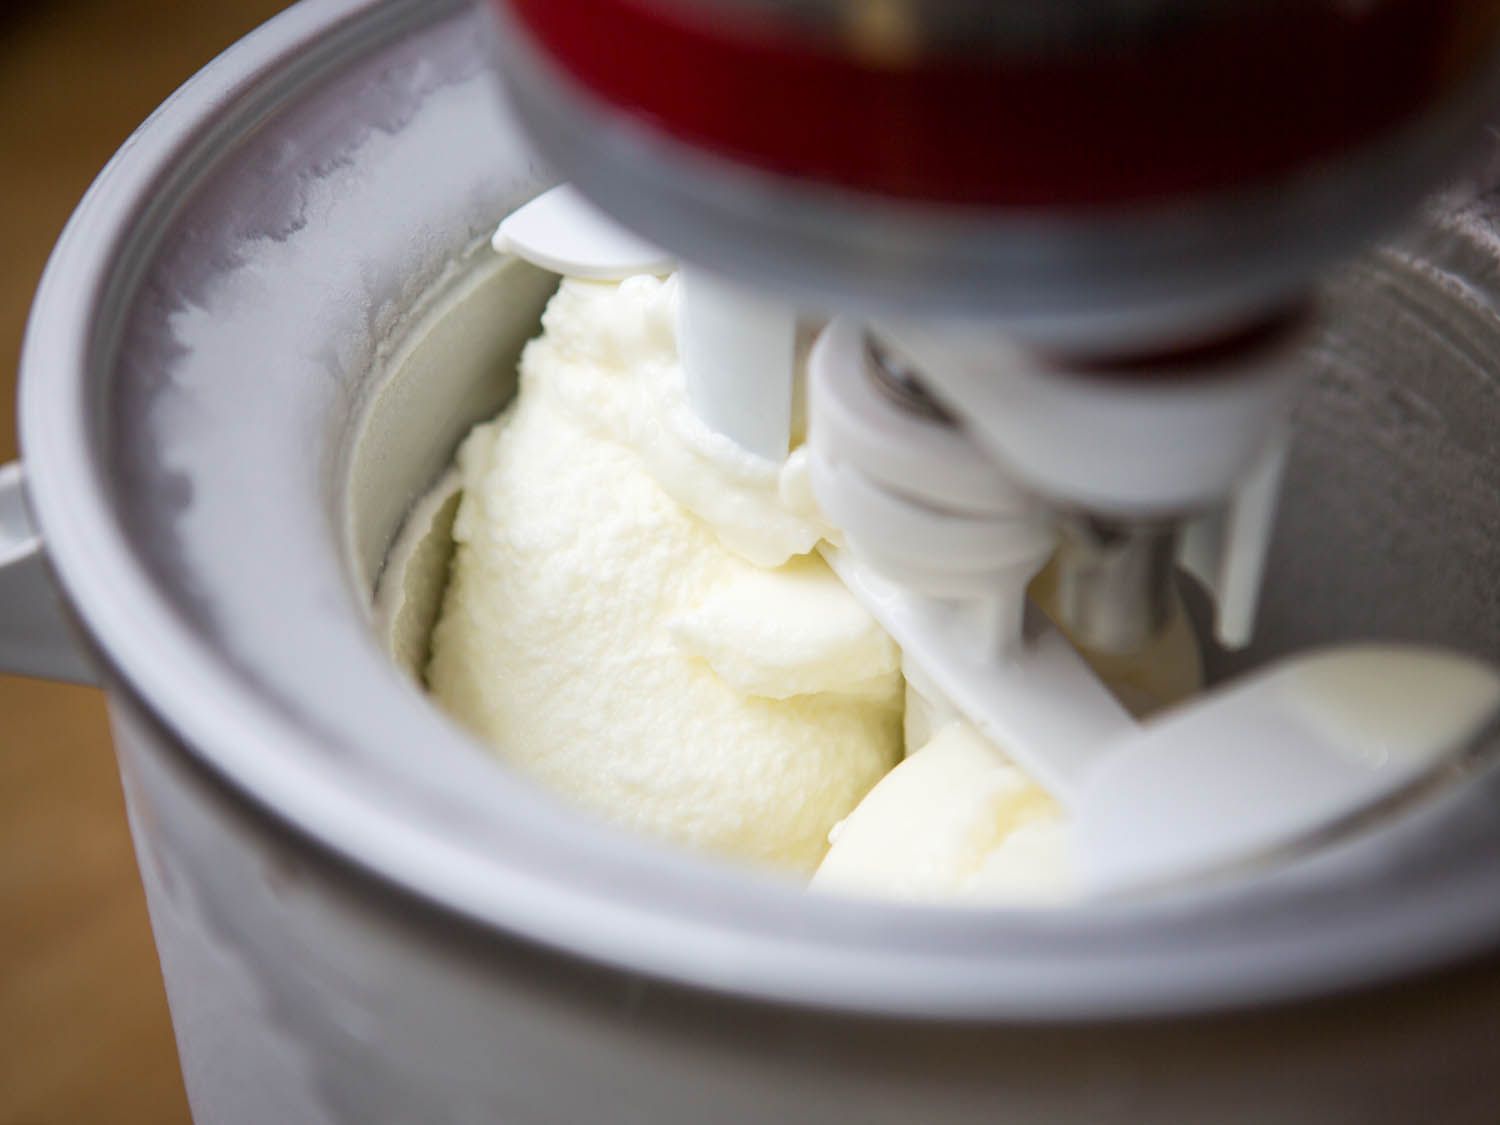 Frozen yogurt churning in an ice cream maker.